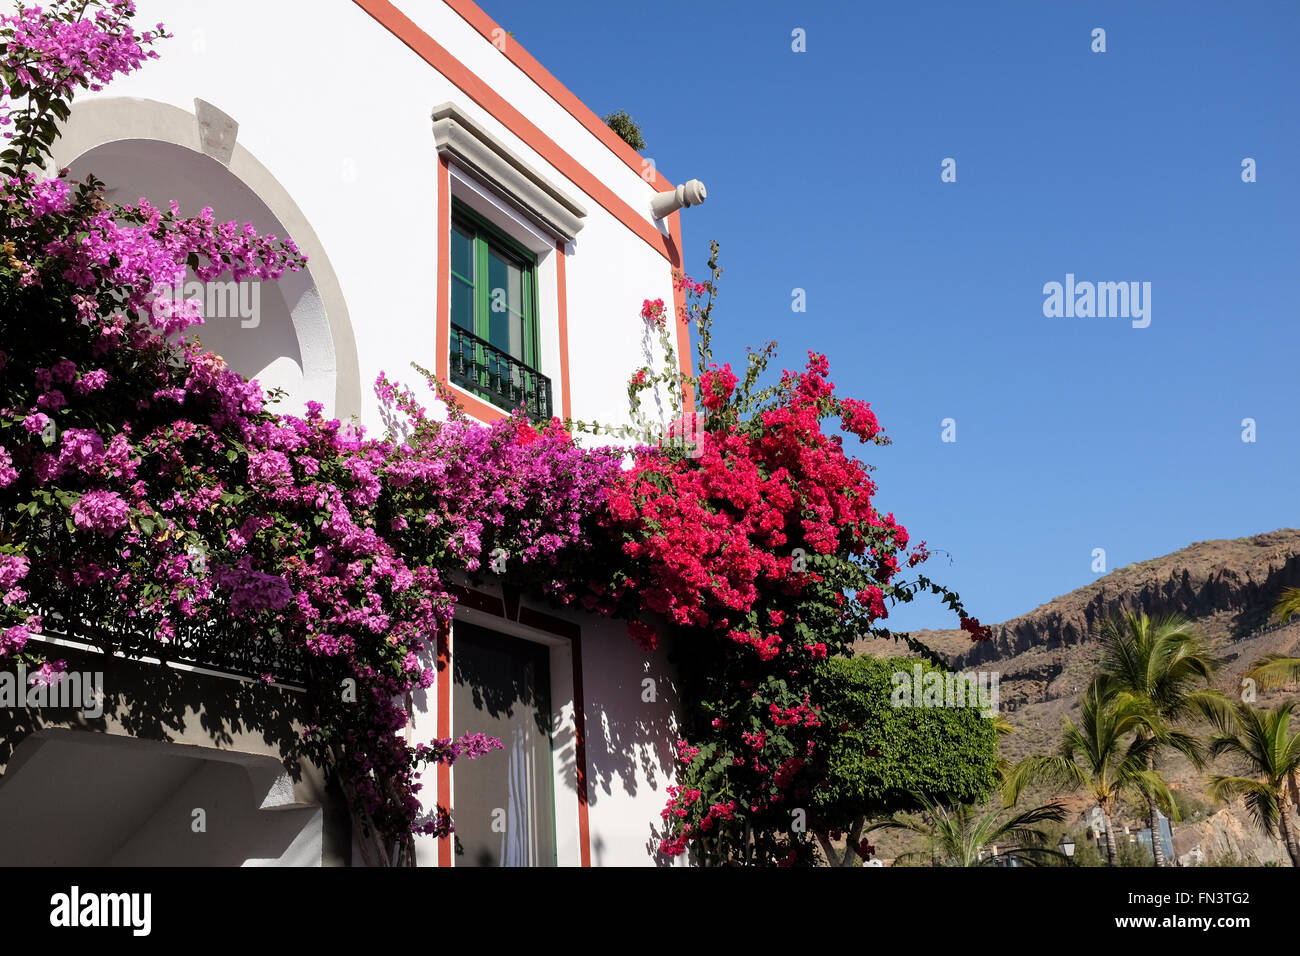 Puerto de Mogán, Gran Canaria, Canary Islands, Spain Stock Photo